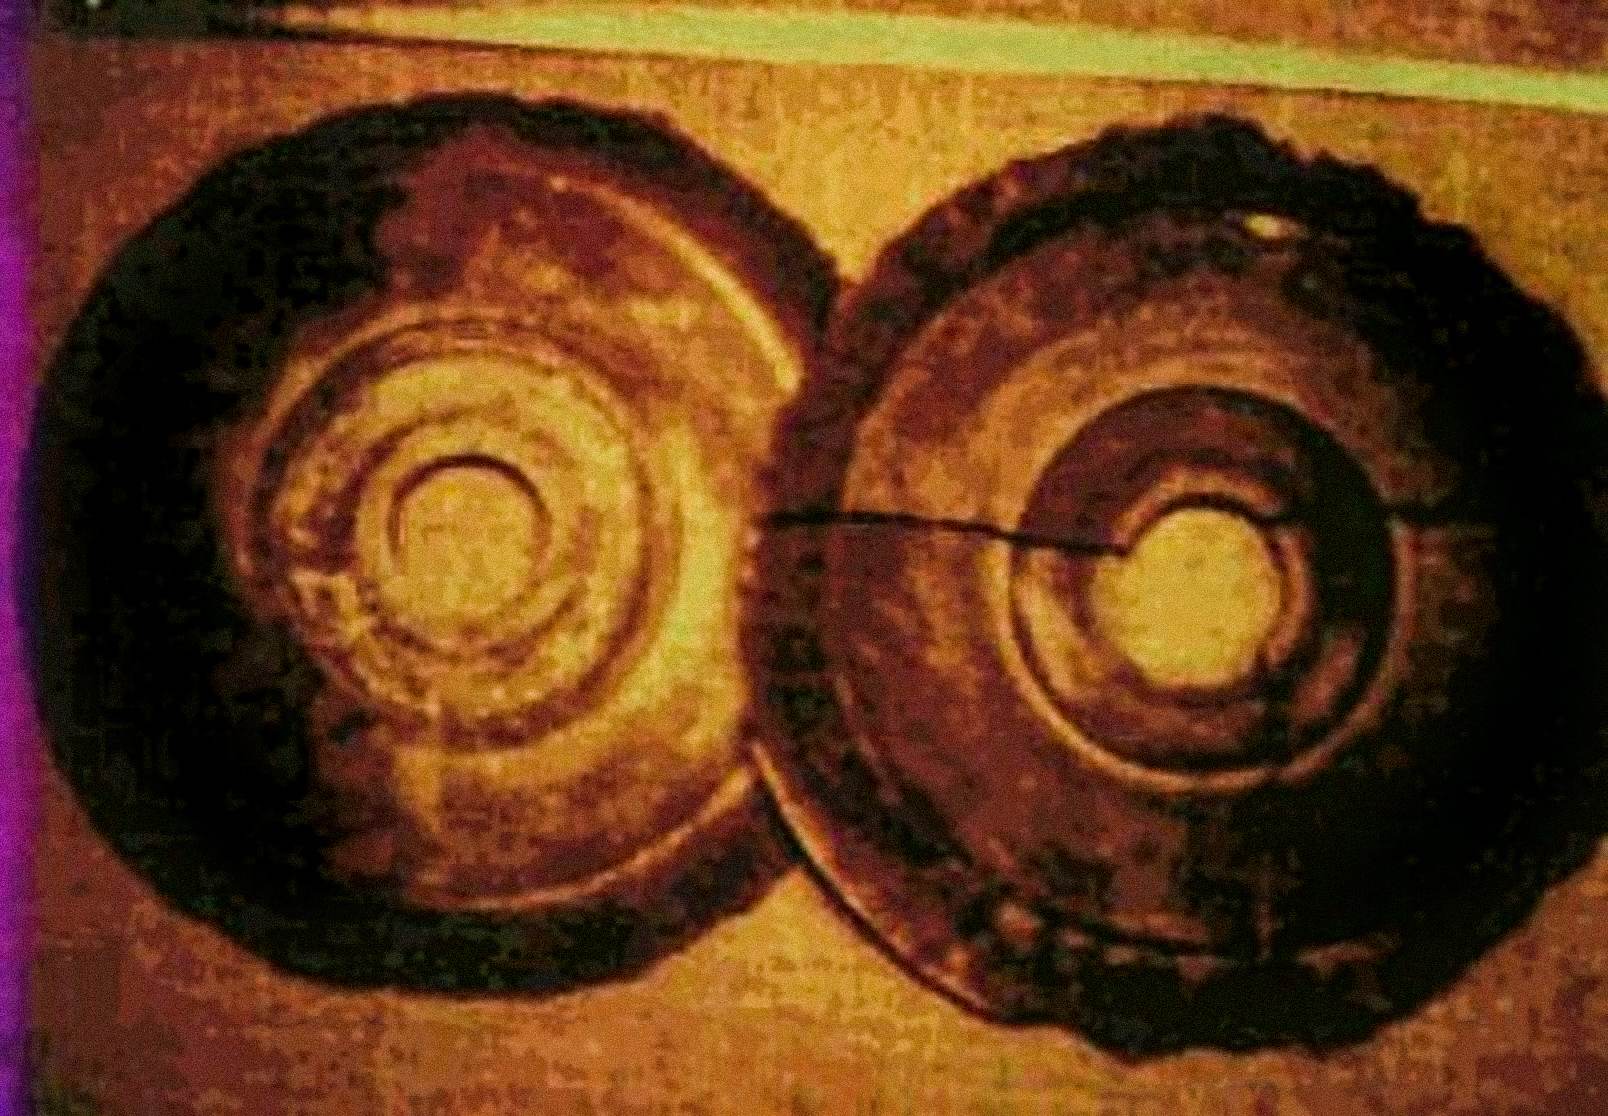 Năm 1974, Ernst Wegerer, một kỹ sư người Áo, đã chụp ảnh hai đĩa đáp ứng các mô tả của Dropa Stones. Anh ấy đang trong một chuyến tham quan có hướng dẫn viên Bảo tàng Banpo ở Tây An, thì anh ấy nhìn thấy những chiếc đĩa đá được trưng bày. Anh ta tuyên bố anh ta đã nhìn thấy một lỗ ở trung tâm của mỗi chiếc đĩa và các chữ tượng hình trong các rãnh giống như hình xoắn ốc bị vỡ vụn một phần.